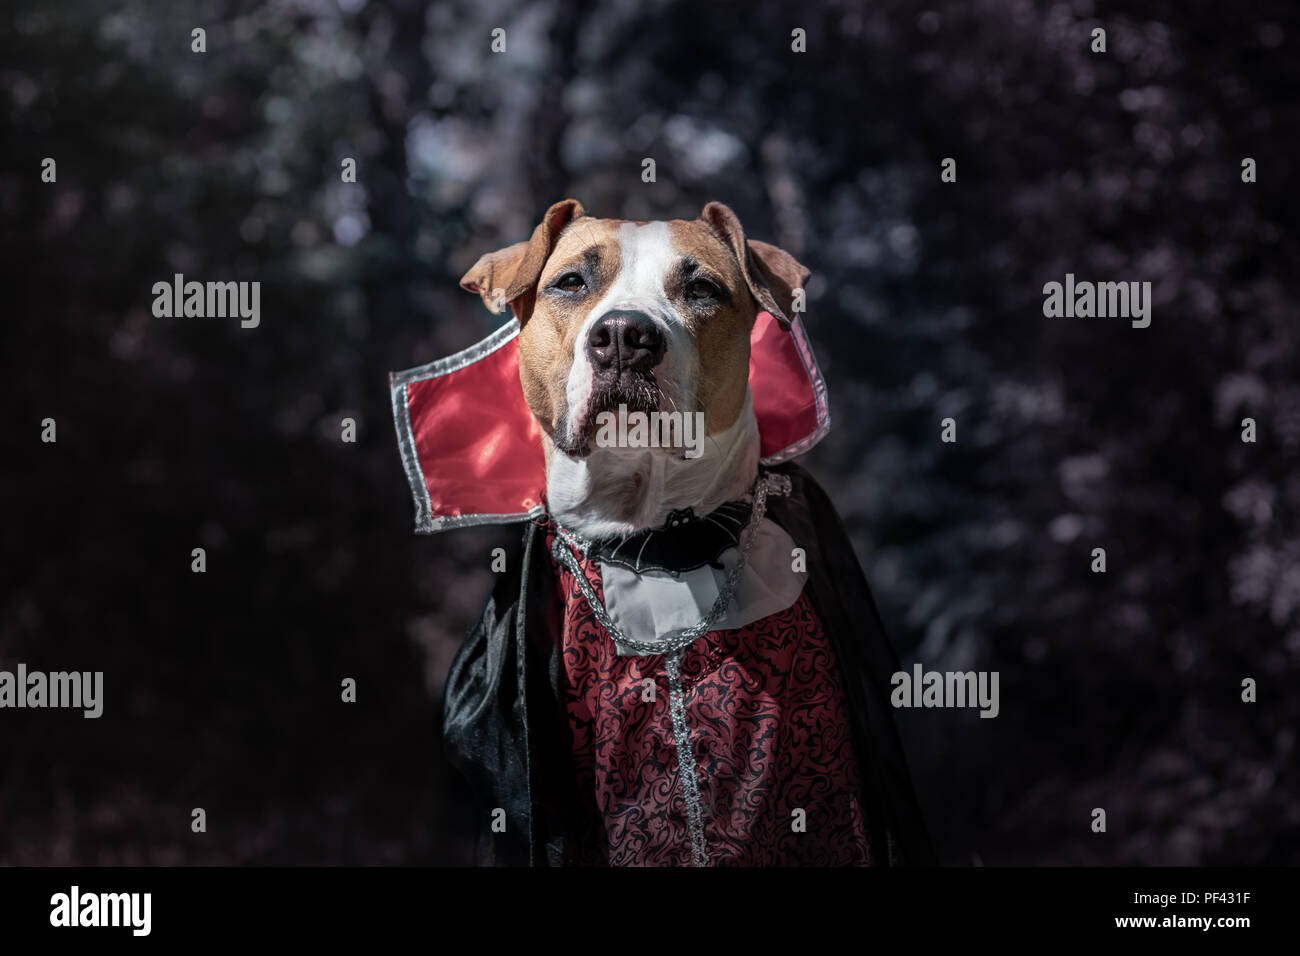 Schöner Hund verkleidet als Vampir in dunklen Wald Mondschein. Cute Staffordshire Terrier Welpe in halloween kostüm beängstigend Vampir im Wald, Schuß Stockfoto